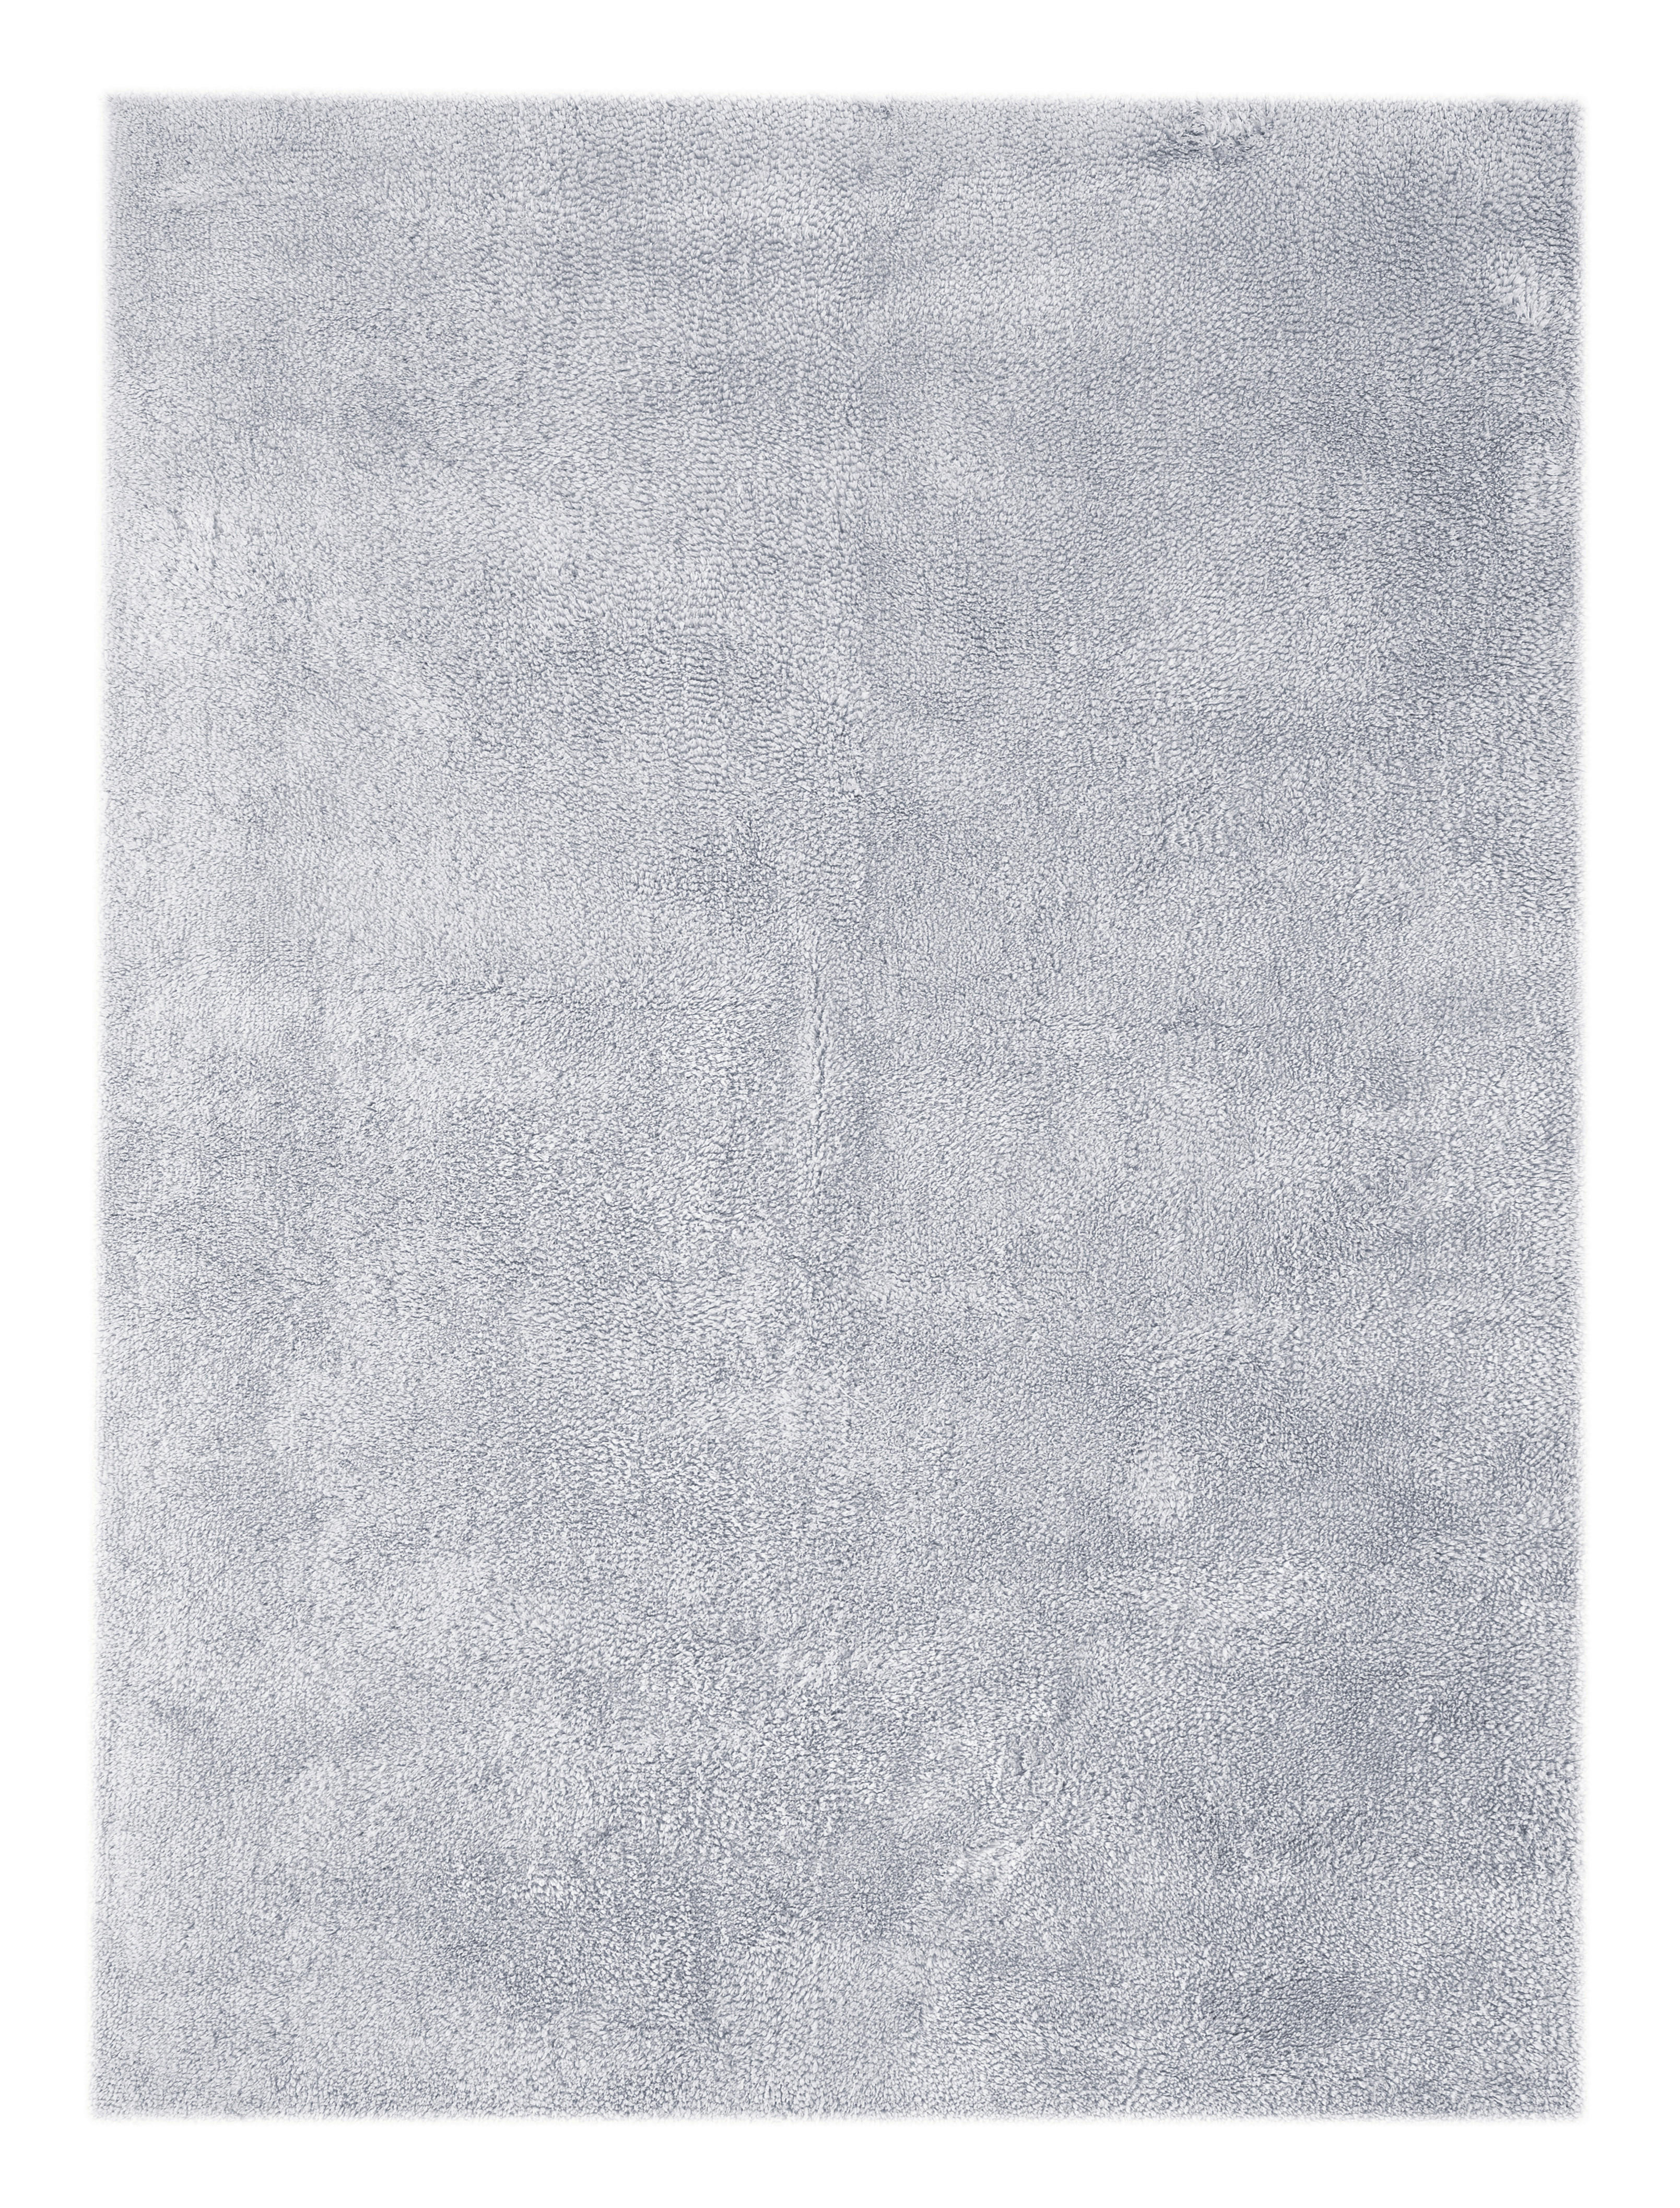 HOCHFLORTEPPICH  80/150 cm   Pastellblau   - Pastellblau, Design, Textil (80/150cm)